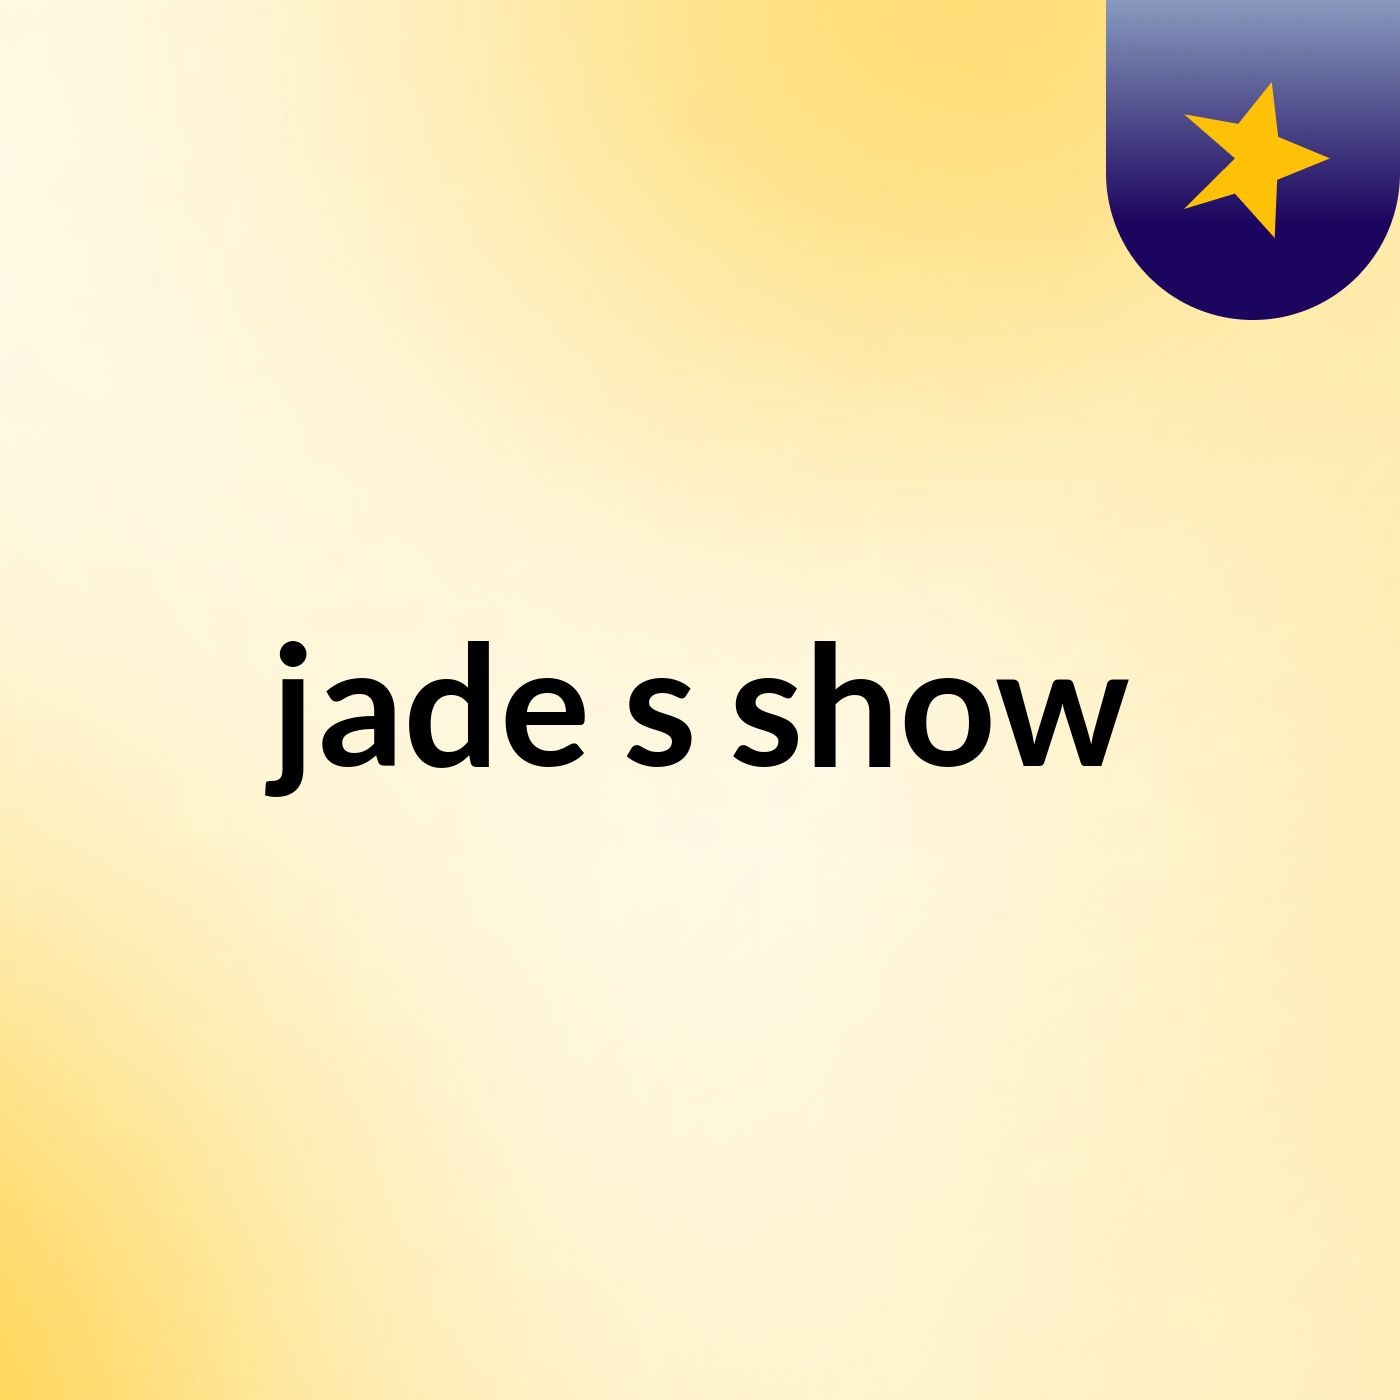 jade's show